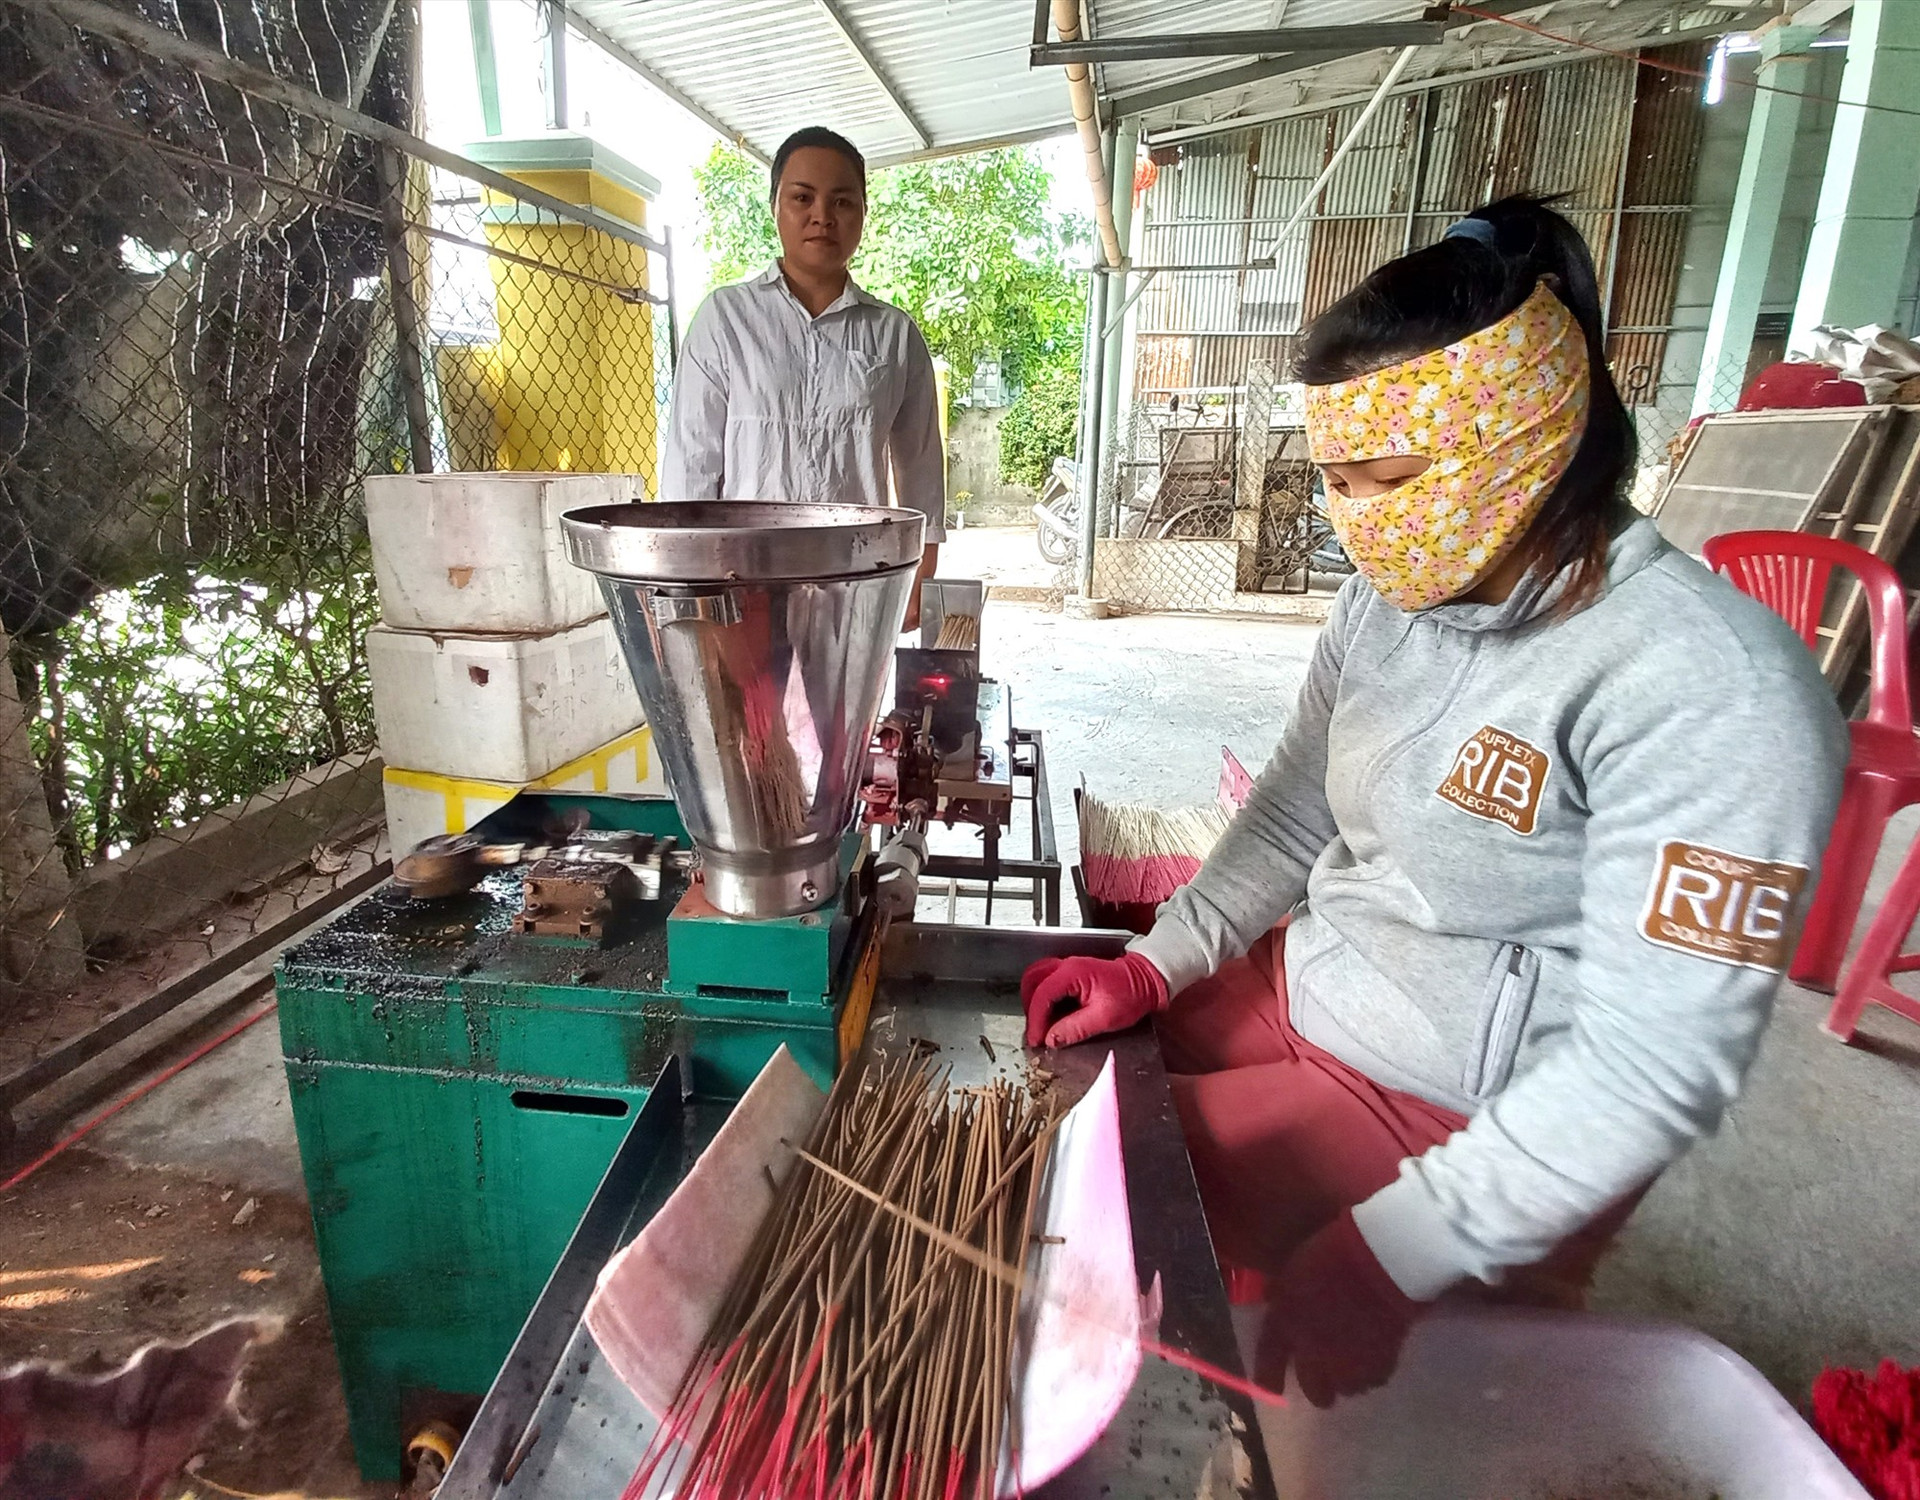 Sản xuất hương trầm mang lại cho hộ Trần Thị Chung Thùy thu nhập 300 triệu đồng/năm. Ảnh: KK